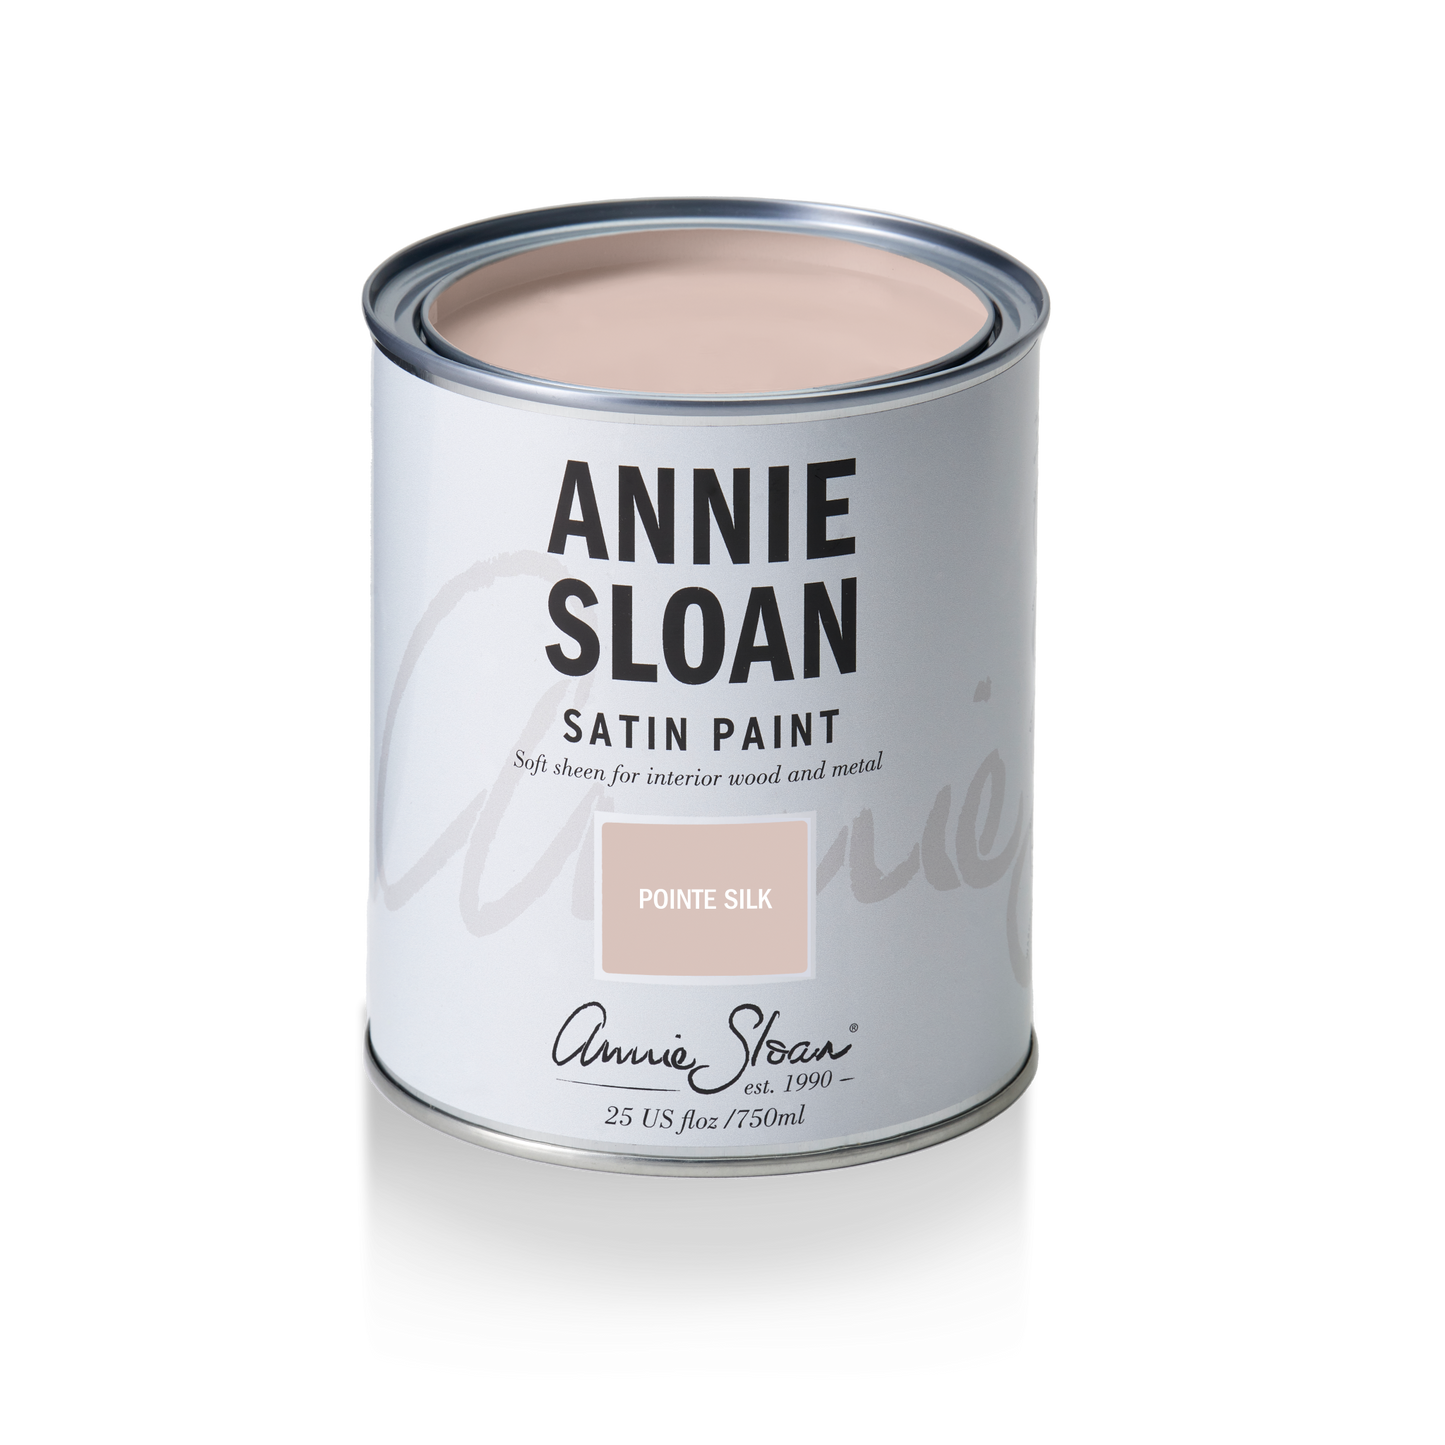 Annie Sloan Satin Paint Pointe Silk, 750 ml Tin